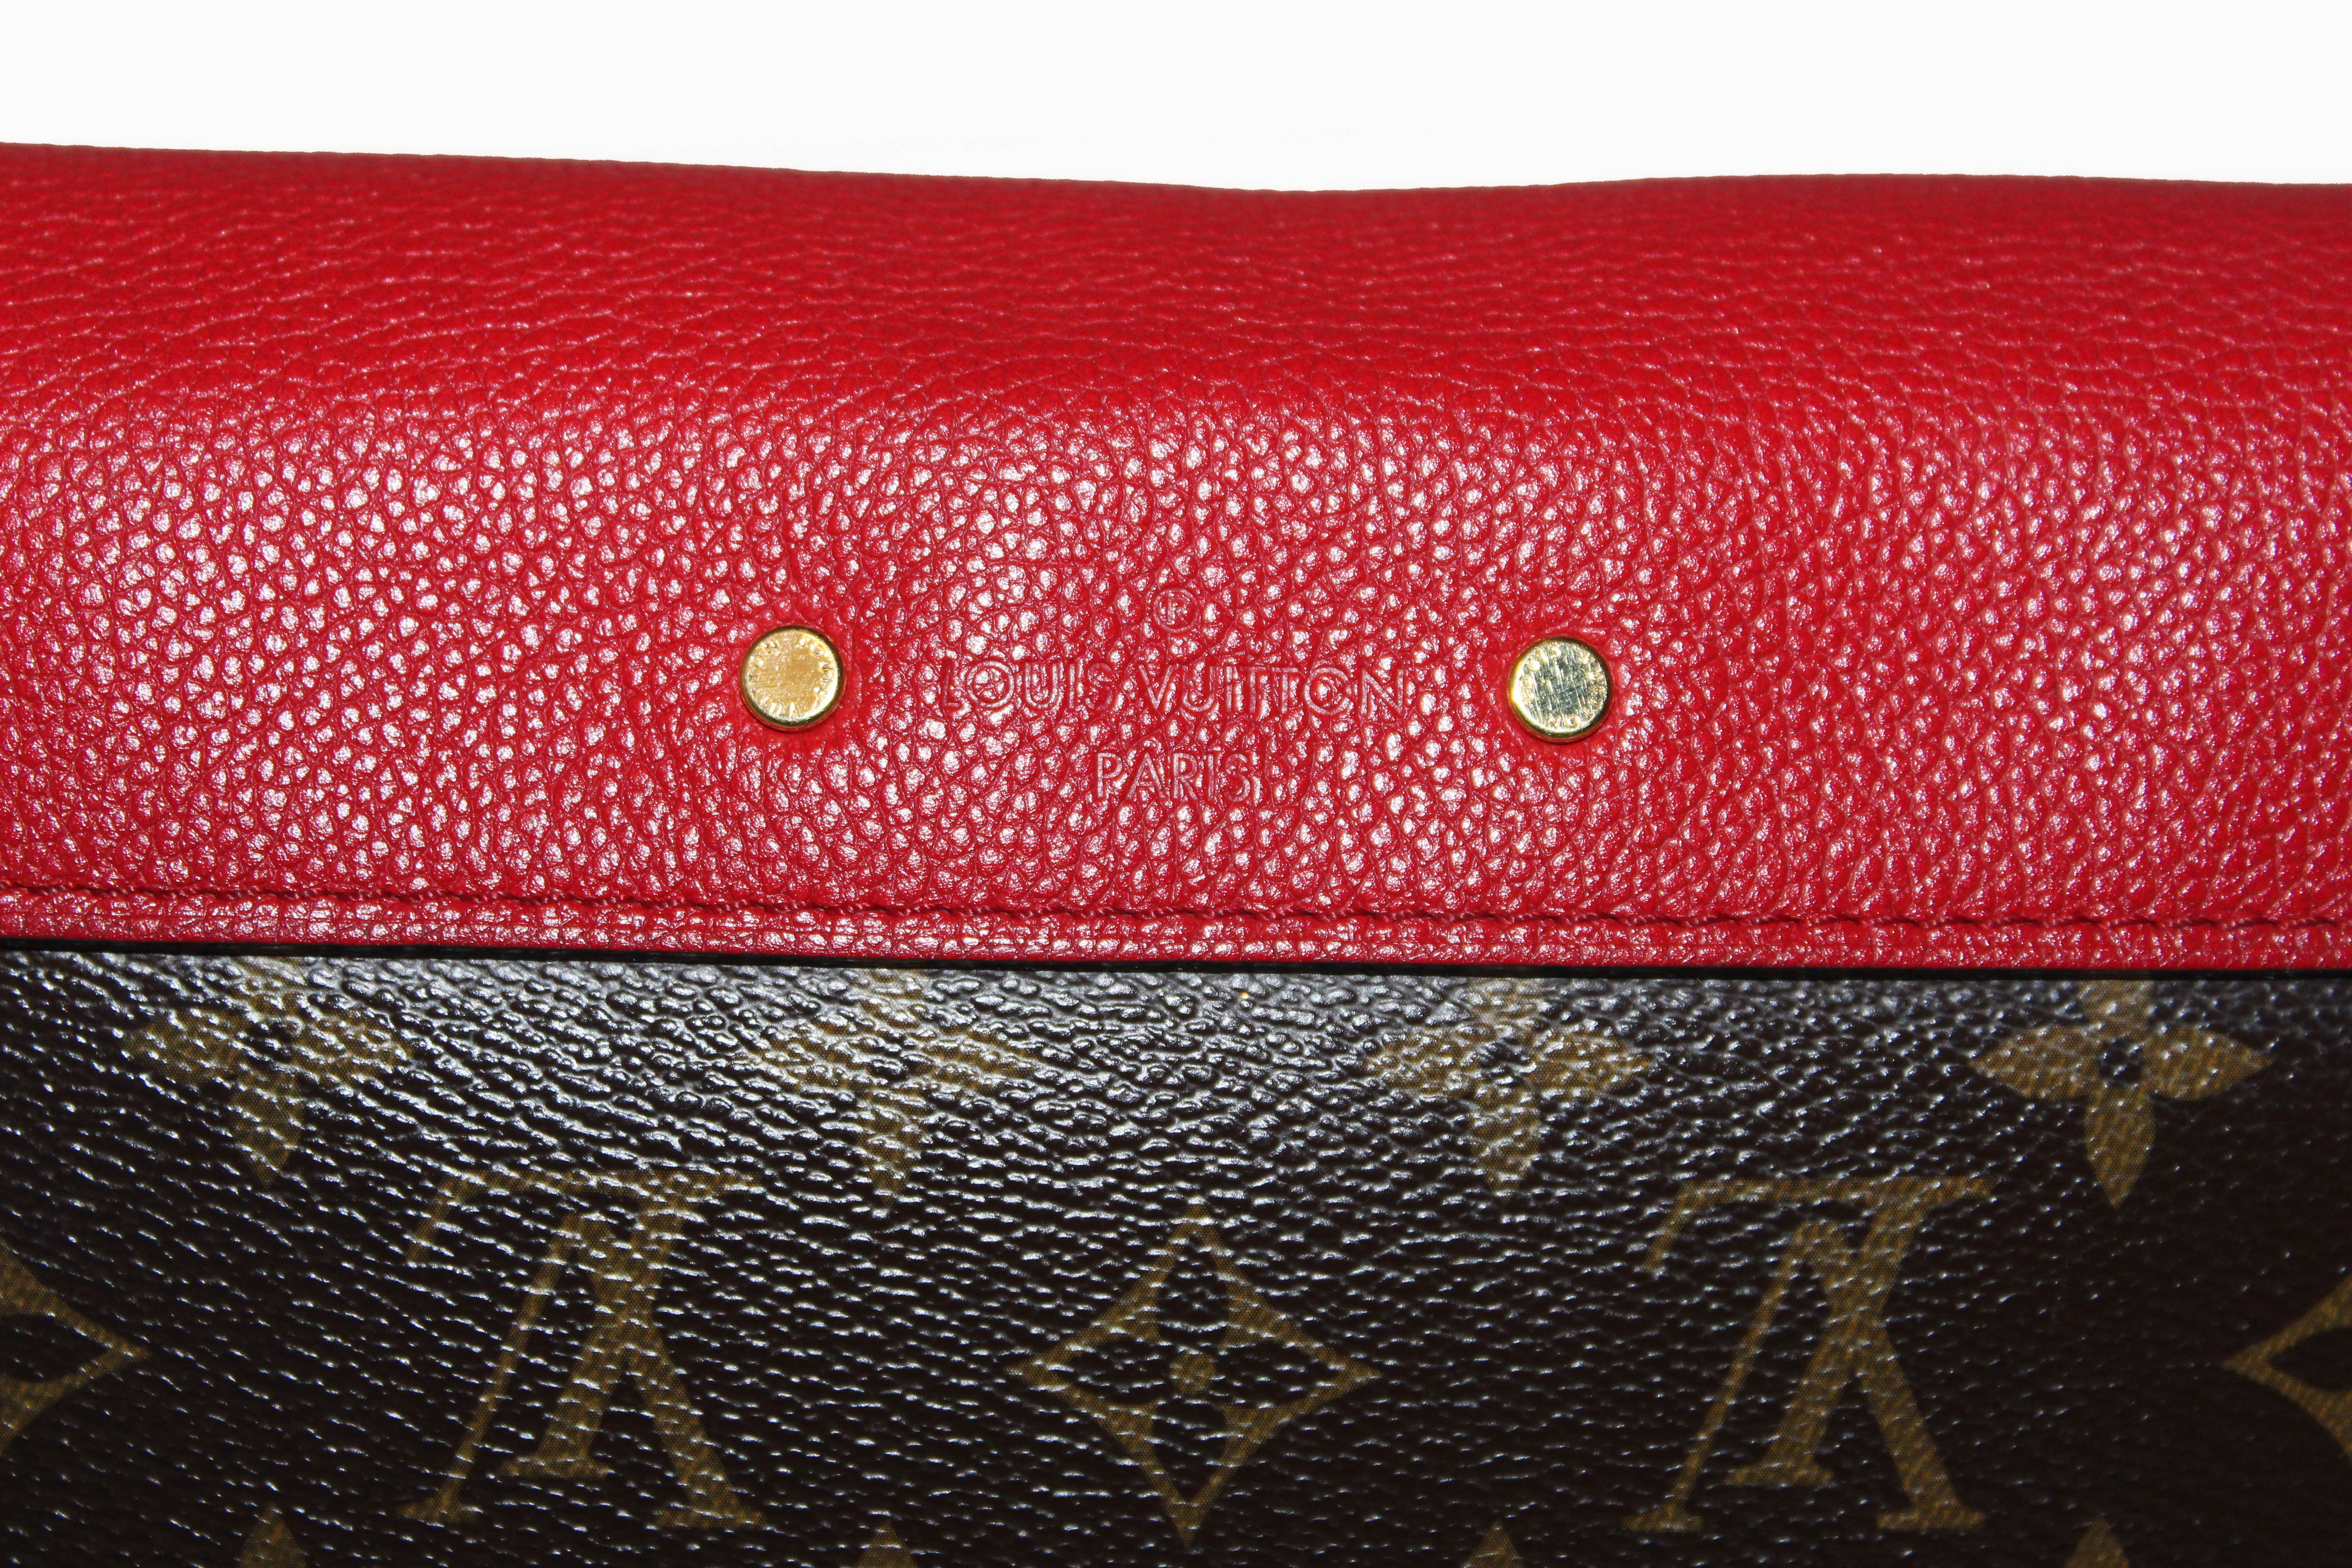 M41200 Louis Vuitton Pallas Chain Shoulder Bag-Wine Red